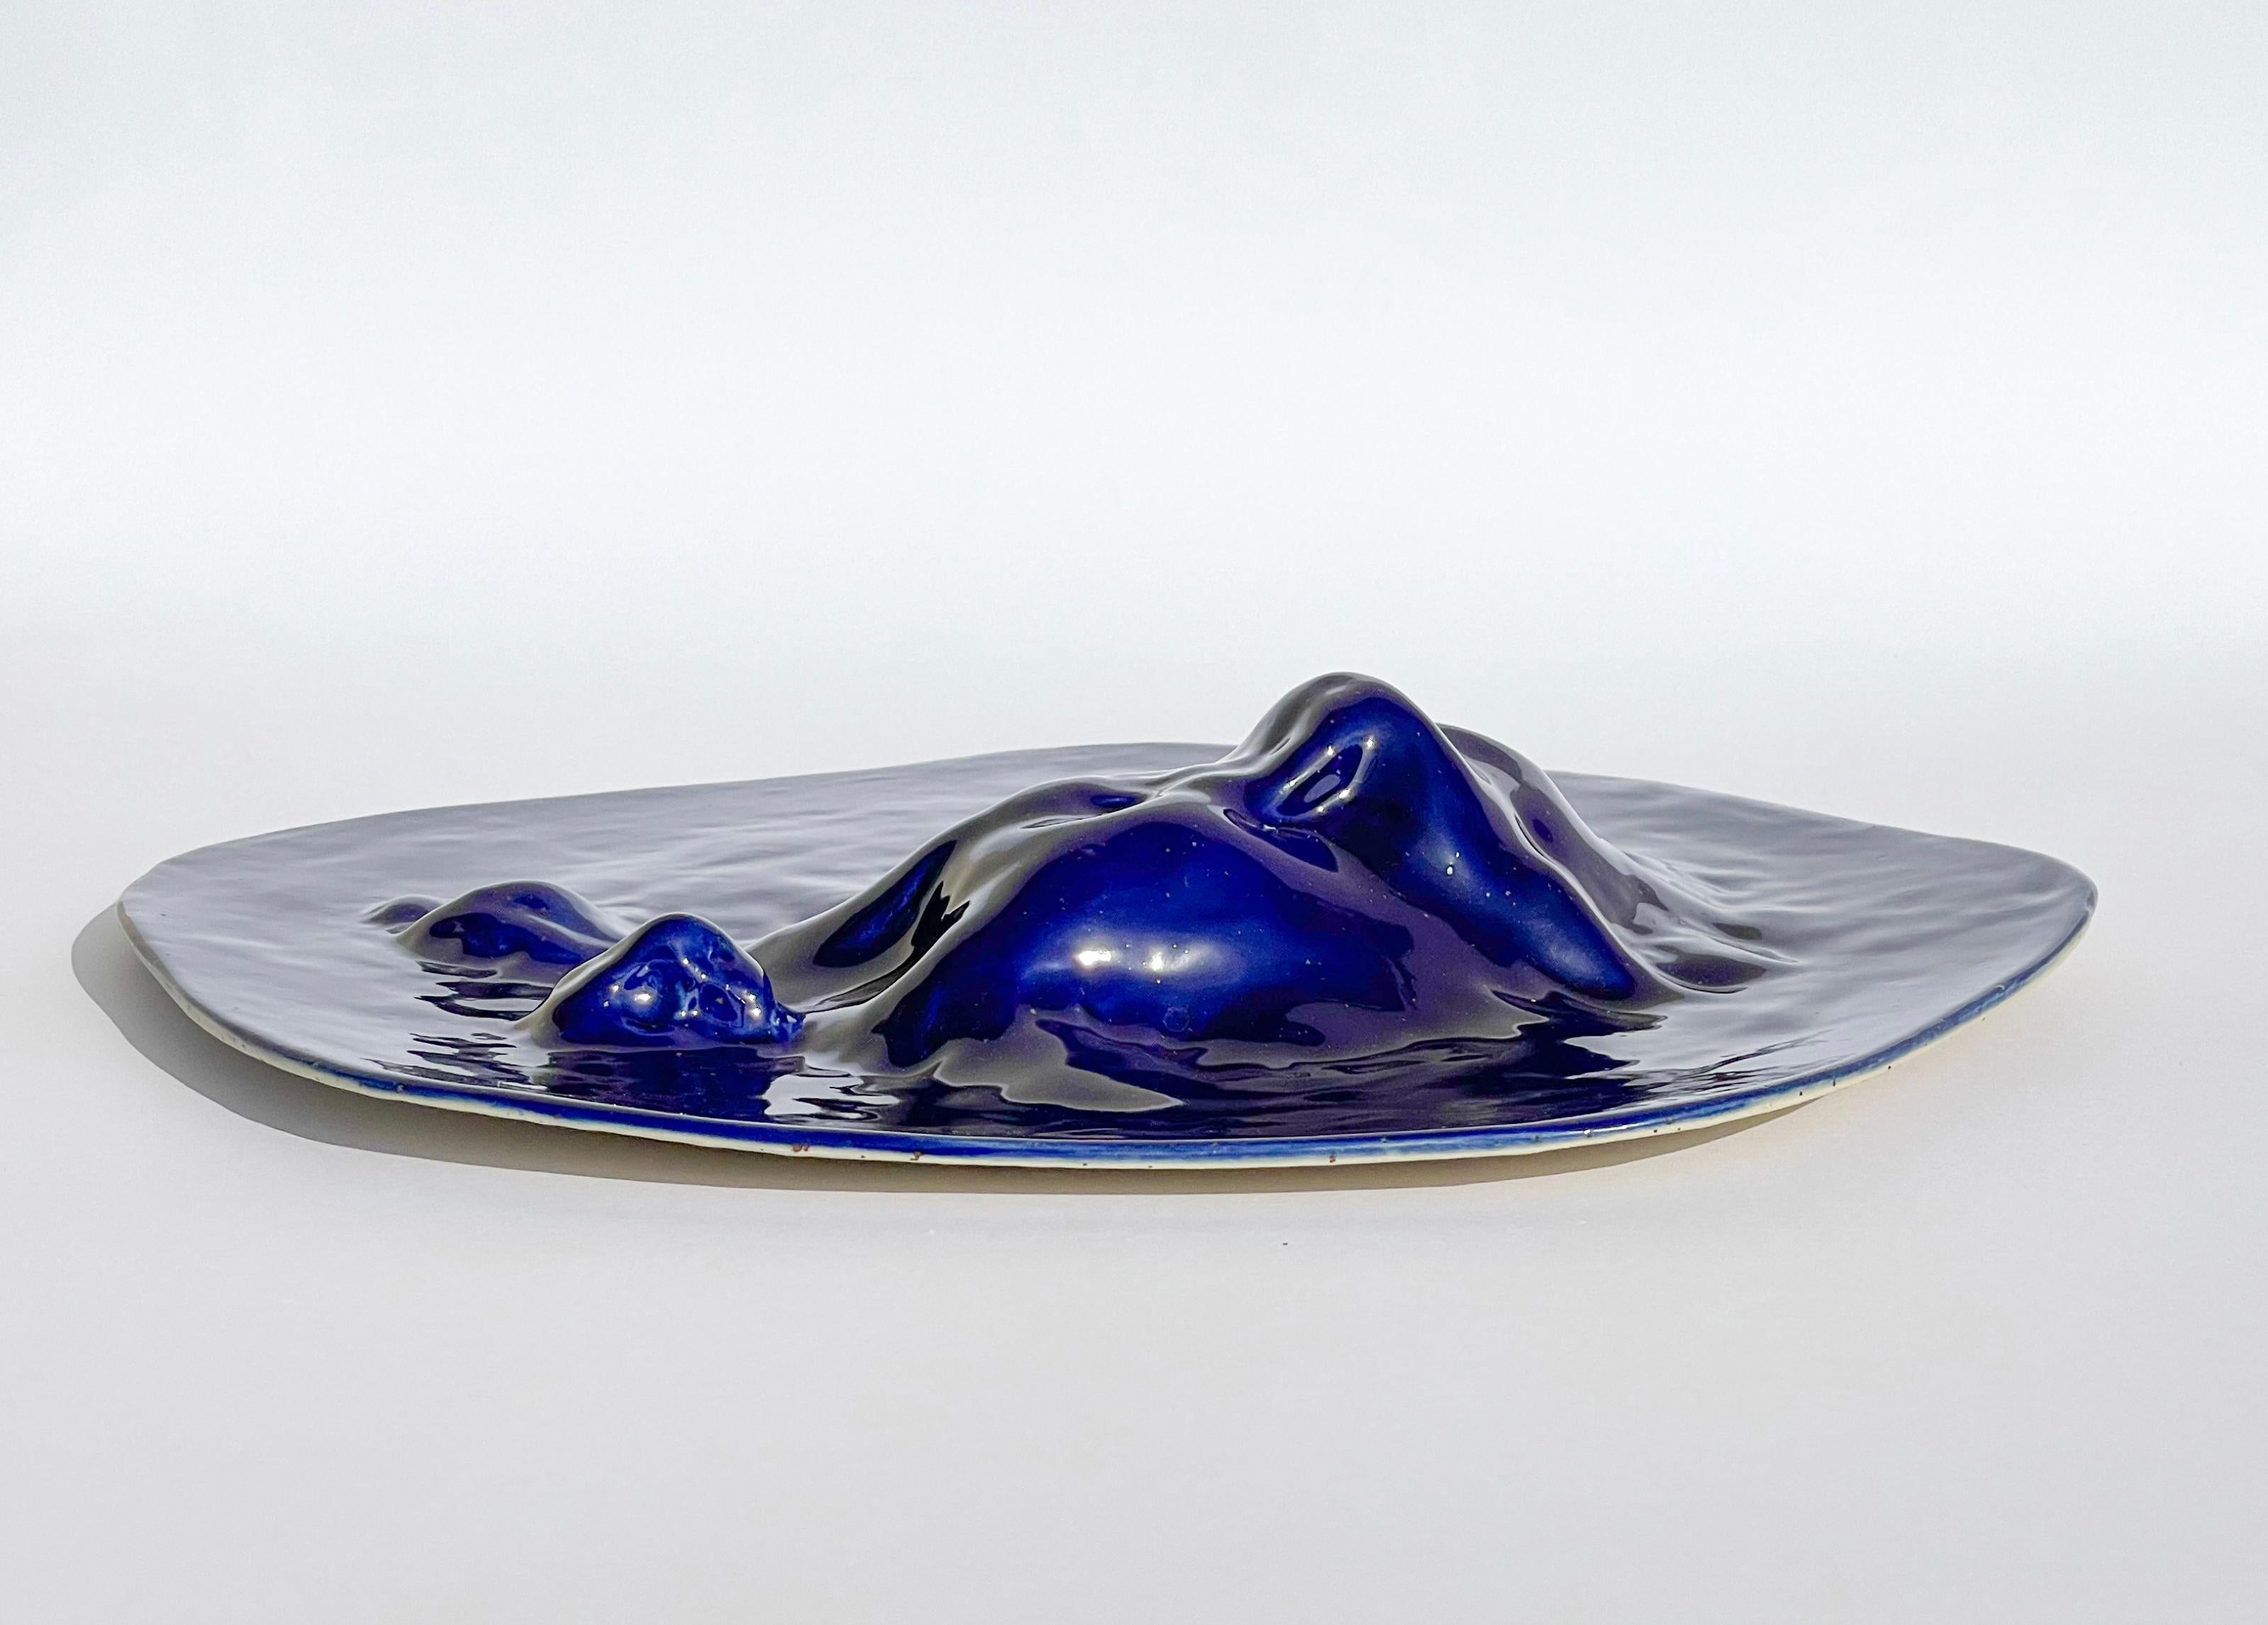 Contemporary Unique Sculptural 'Gongshi' Plates N0.15 Objet D'art Cobalt Blue For Sale